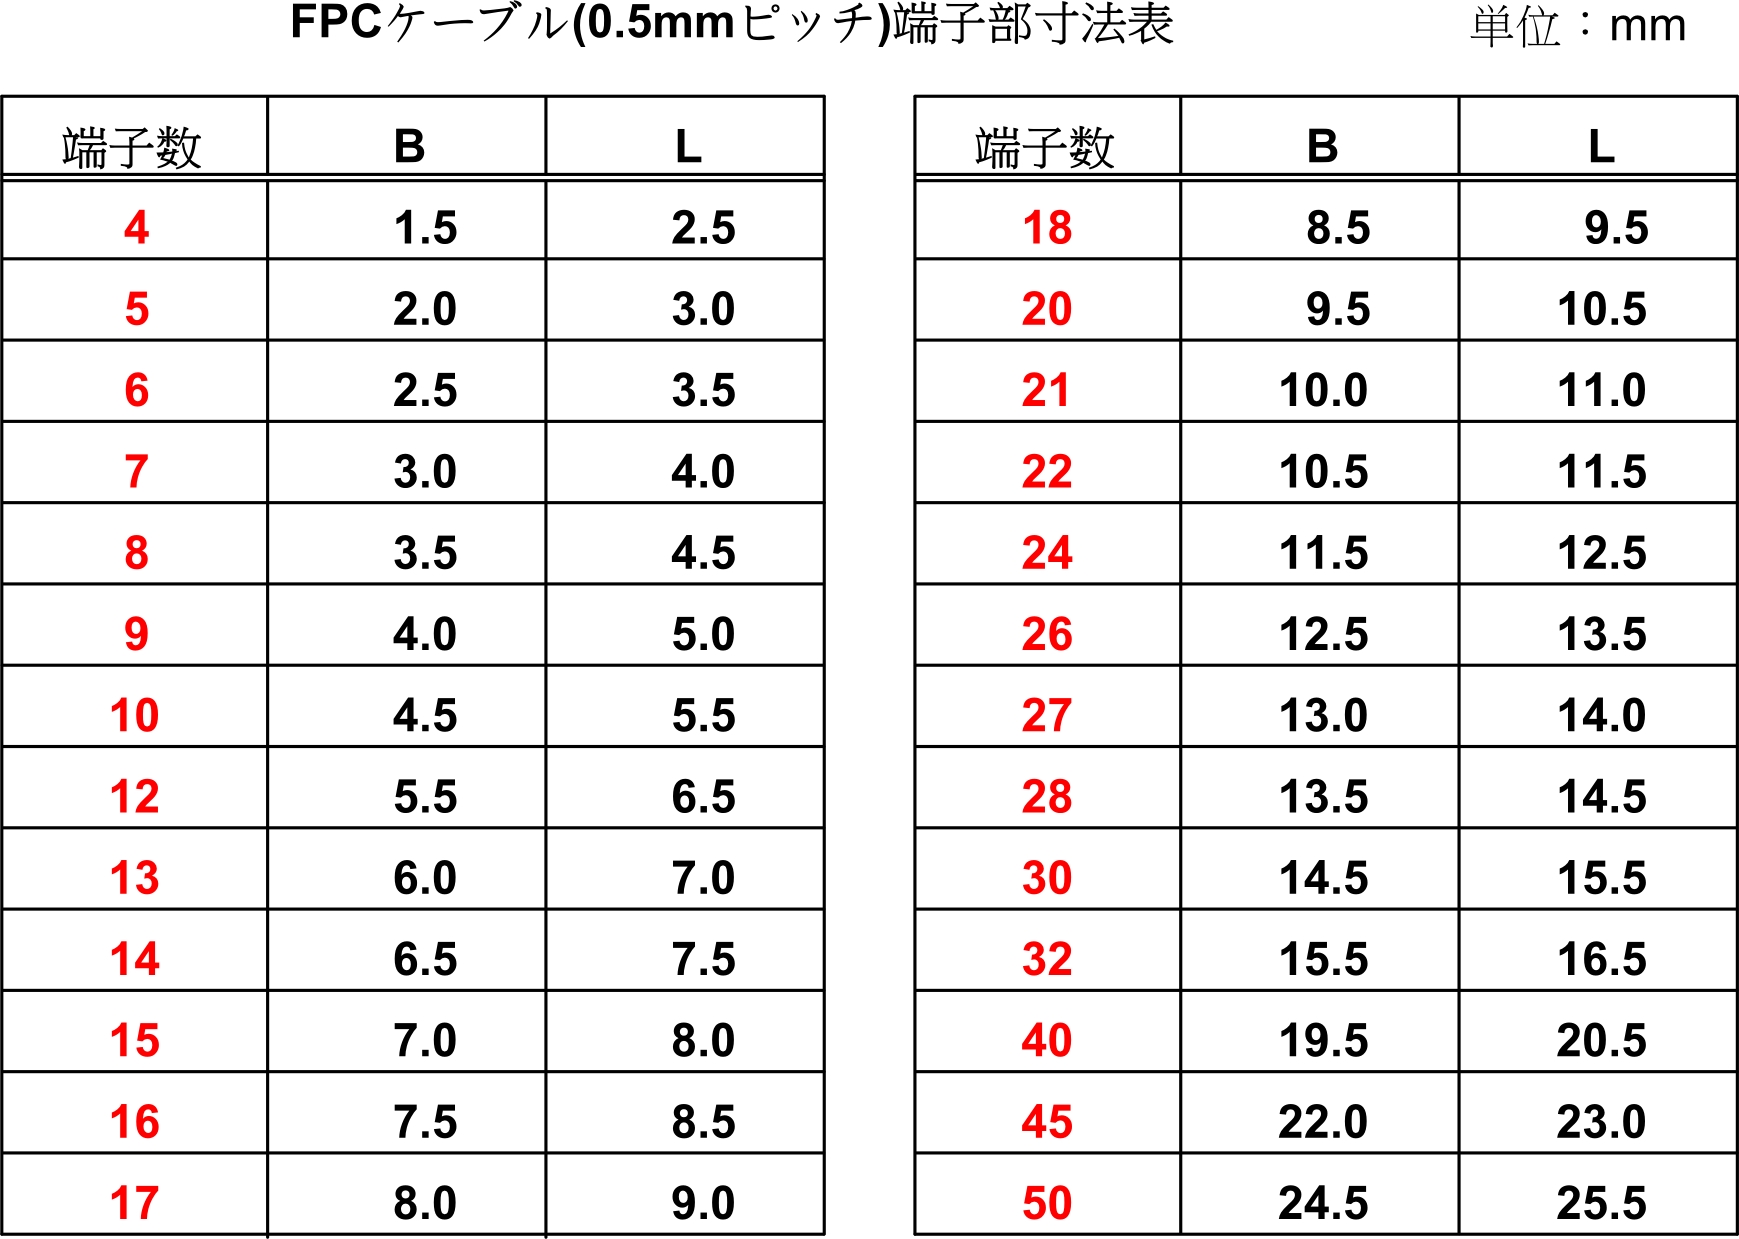 既製品フレキケーブル（FPCケーブル）の0.5mmピッチ寸法表